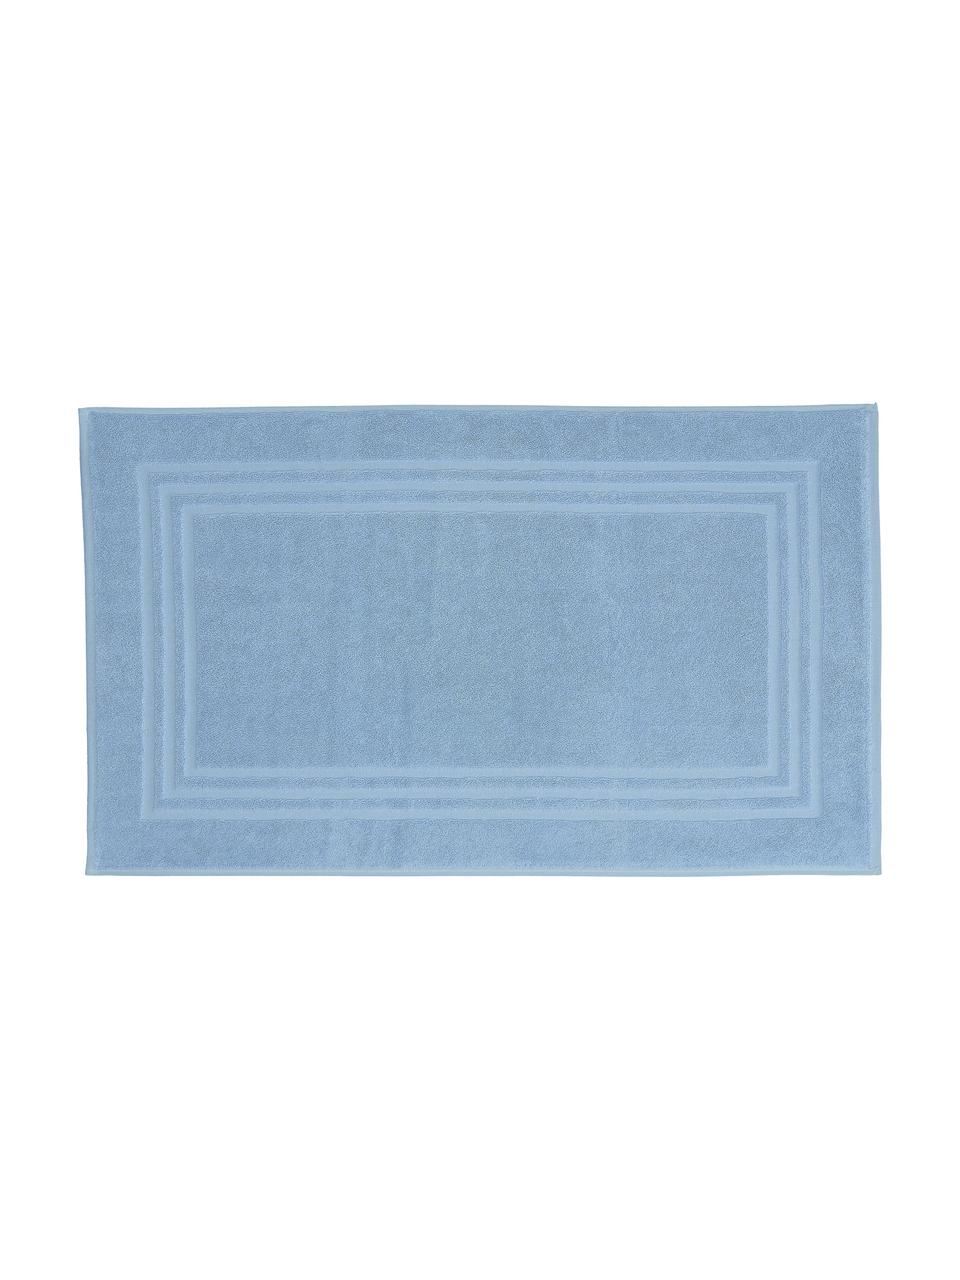 Badmat Gentle, 100% katoen, IJsblauw, B 50 x L 80 cm